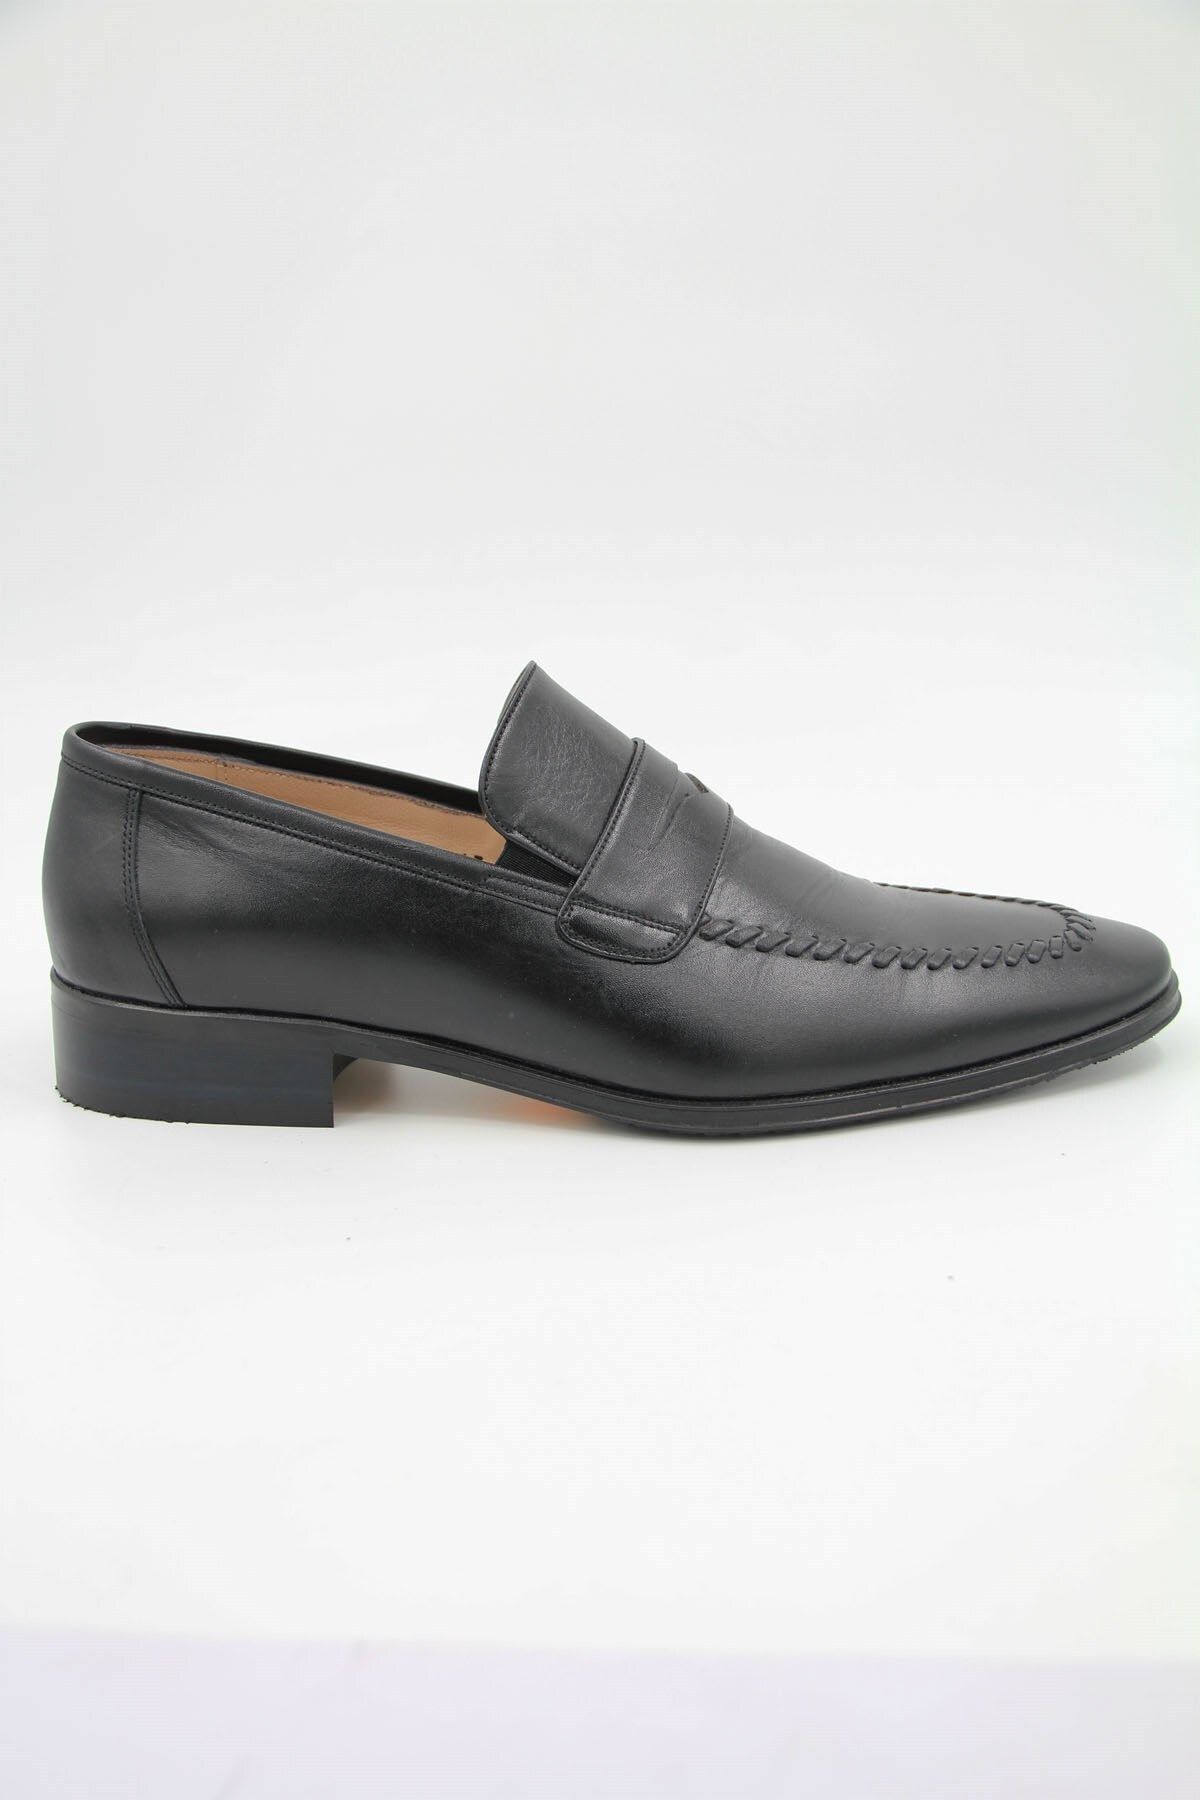 Nevzat Onay 2828-273 Erkek Klasik Ayakkabı - Siyah